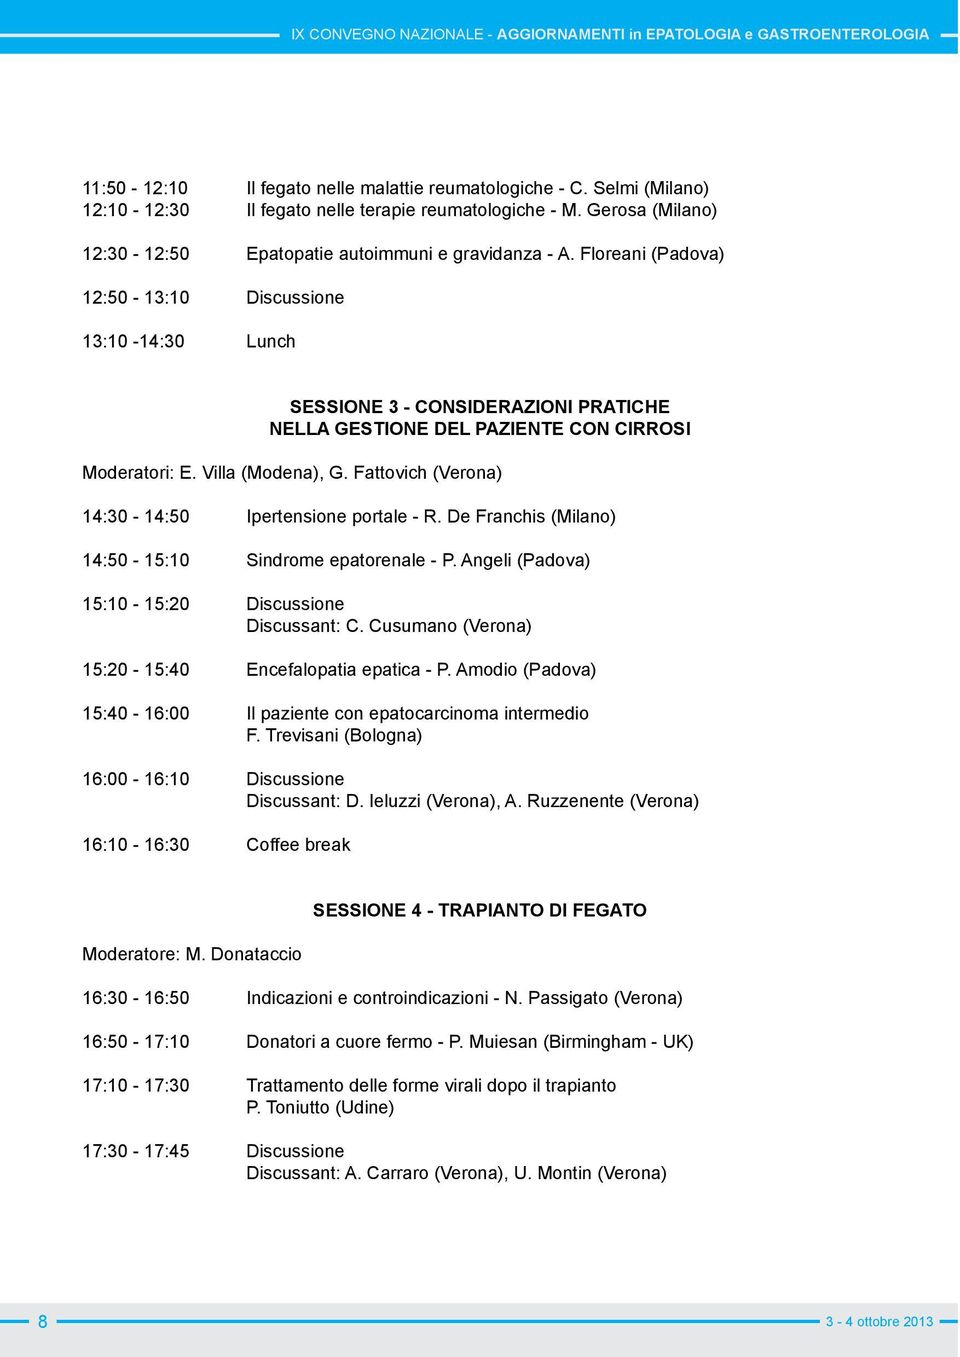 Fattovich (Verona) 14:30-14:50 Ipertensione portale - R. De Franchis (Milano) 14:50-15:10 Sindrome epatorenale - P. Angeli (Padova) 15:10-15:20 Discussione Discussant: C.